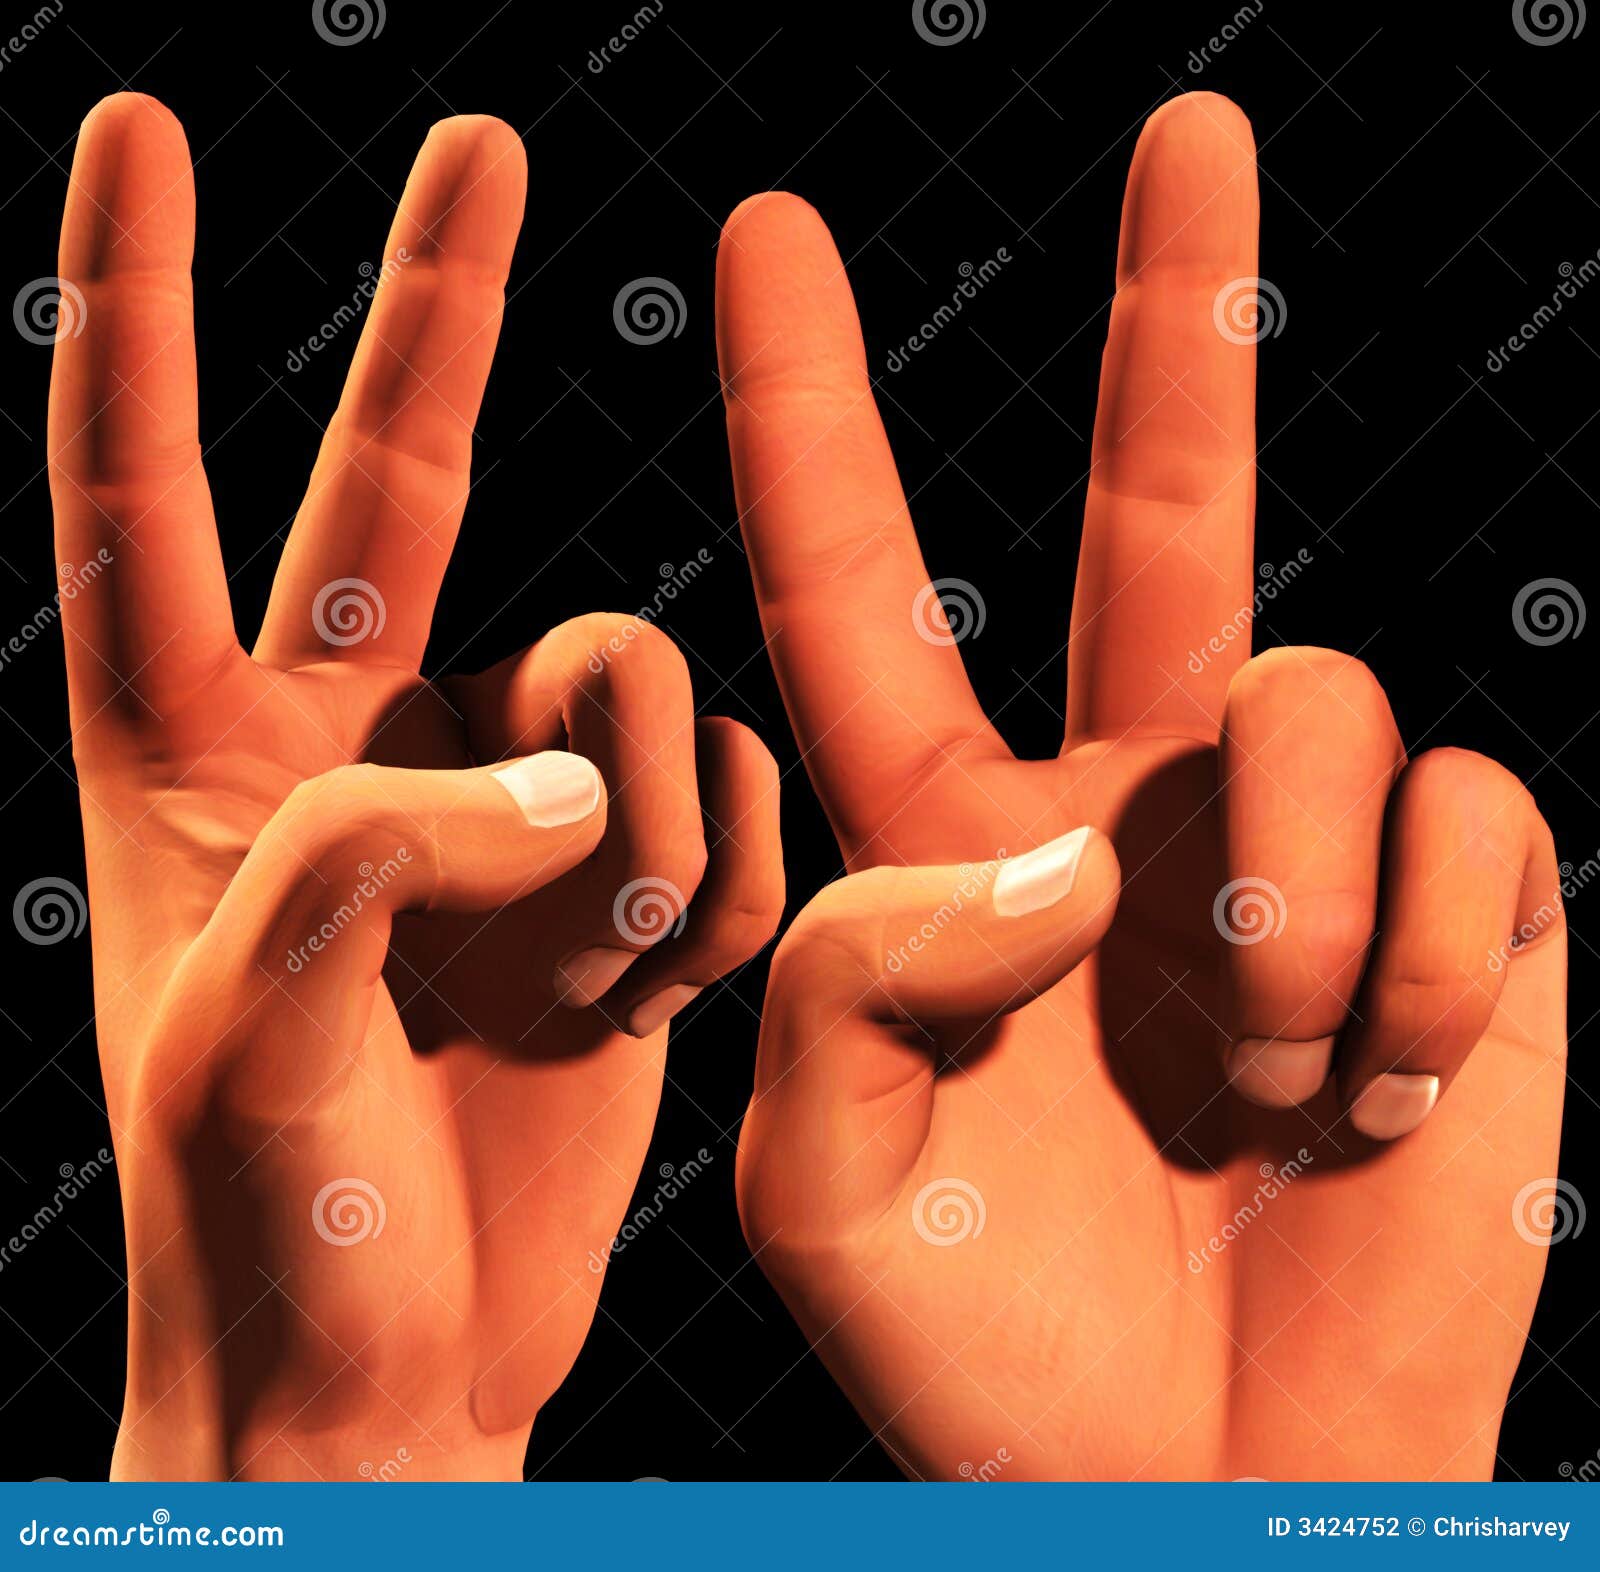 Sieg 4. Ein Begriffsbild eines Sets siegreicher symbolischer Hände, das konnte symbolisieren, Freiheit, Frieden, Gewinnen und Sieg